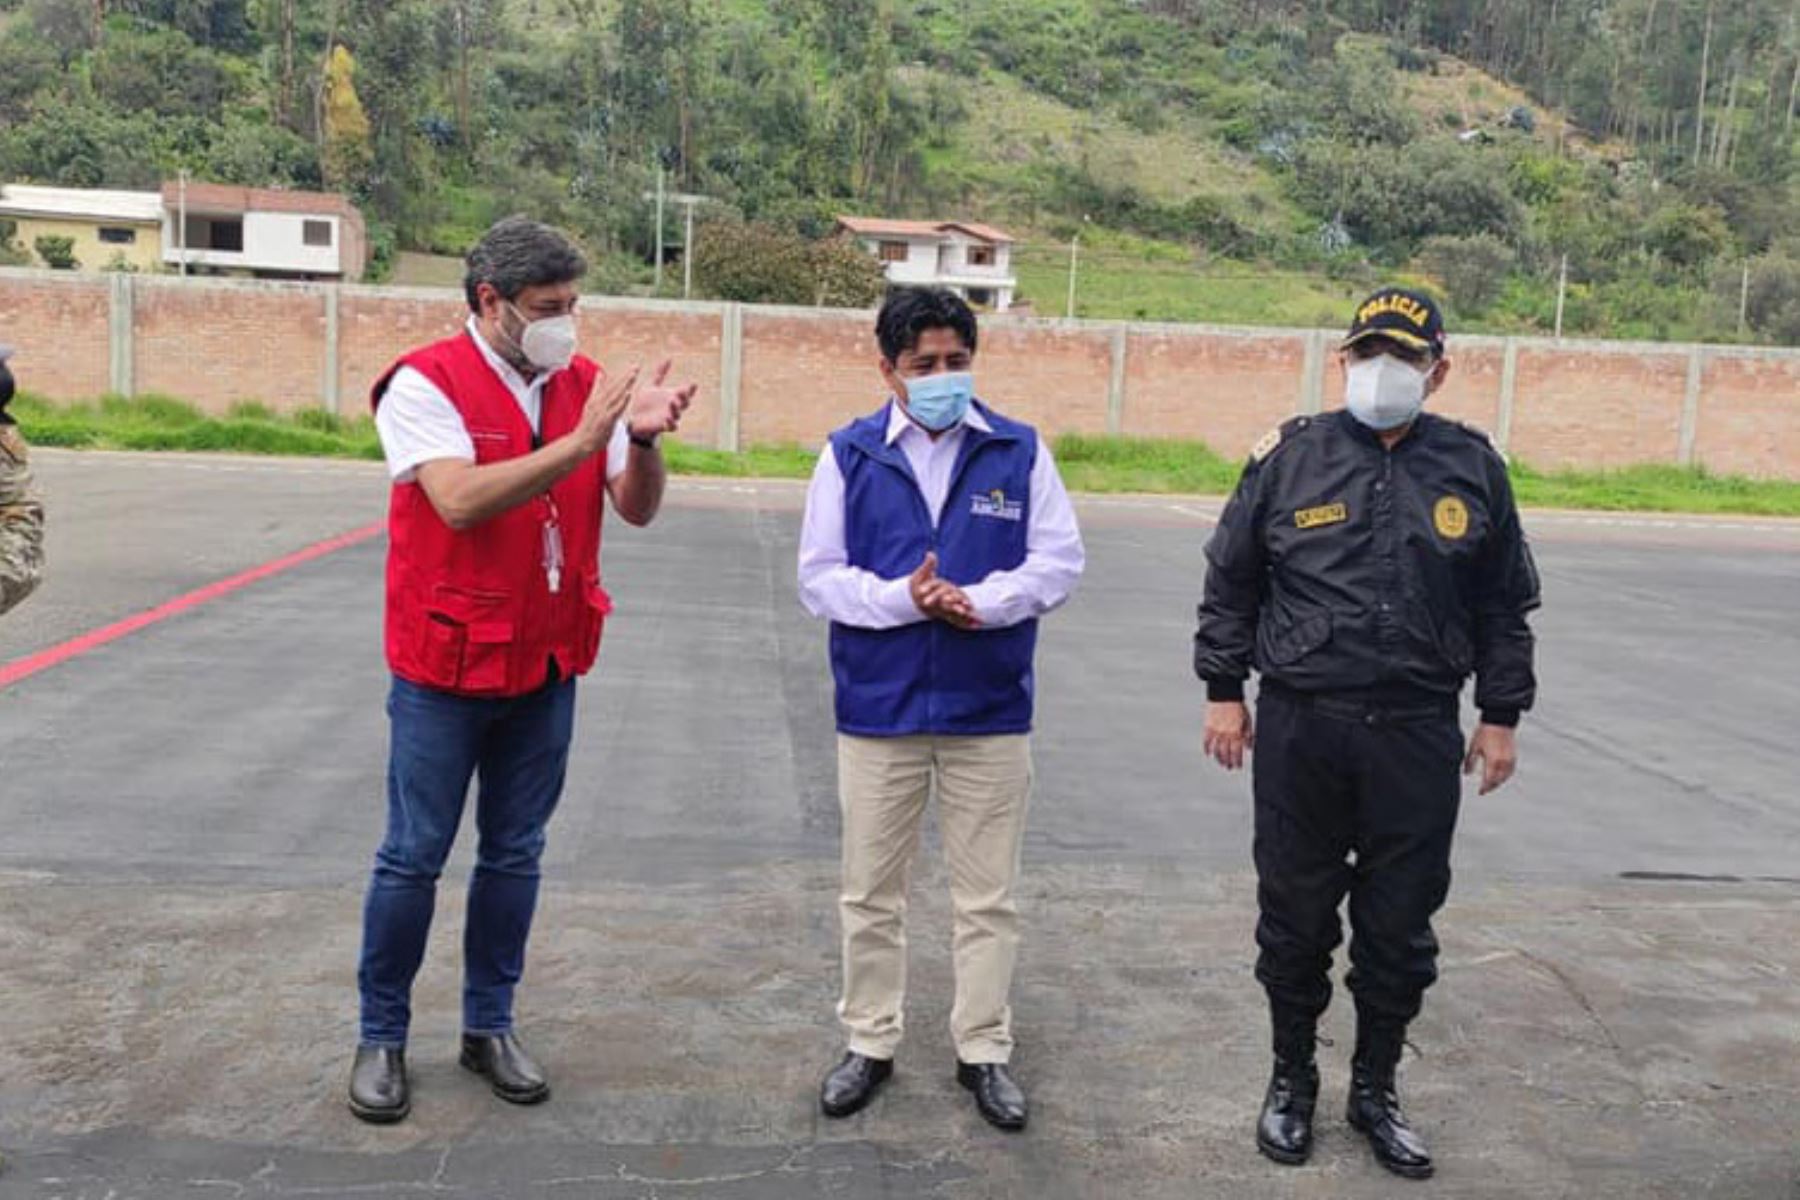 Ministro de Educación, Ricardo Cuenca, llega a la región Ancash con el primer lote de las vacunas de Sinophram para inmunizar al personal de salud de la región.
Foto: Cortesía Gonzalo Horma